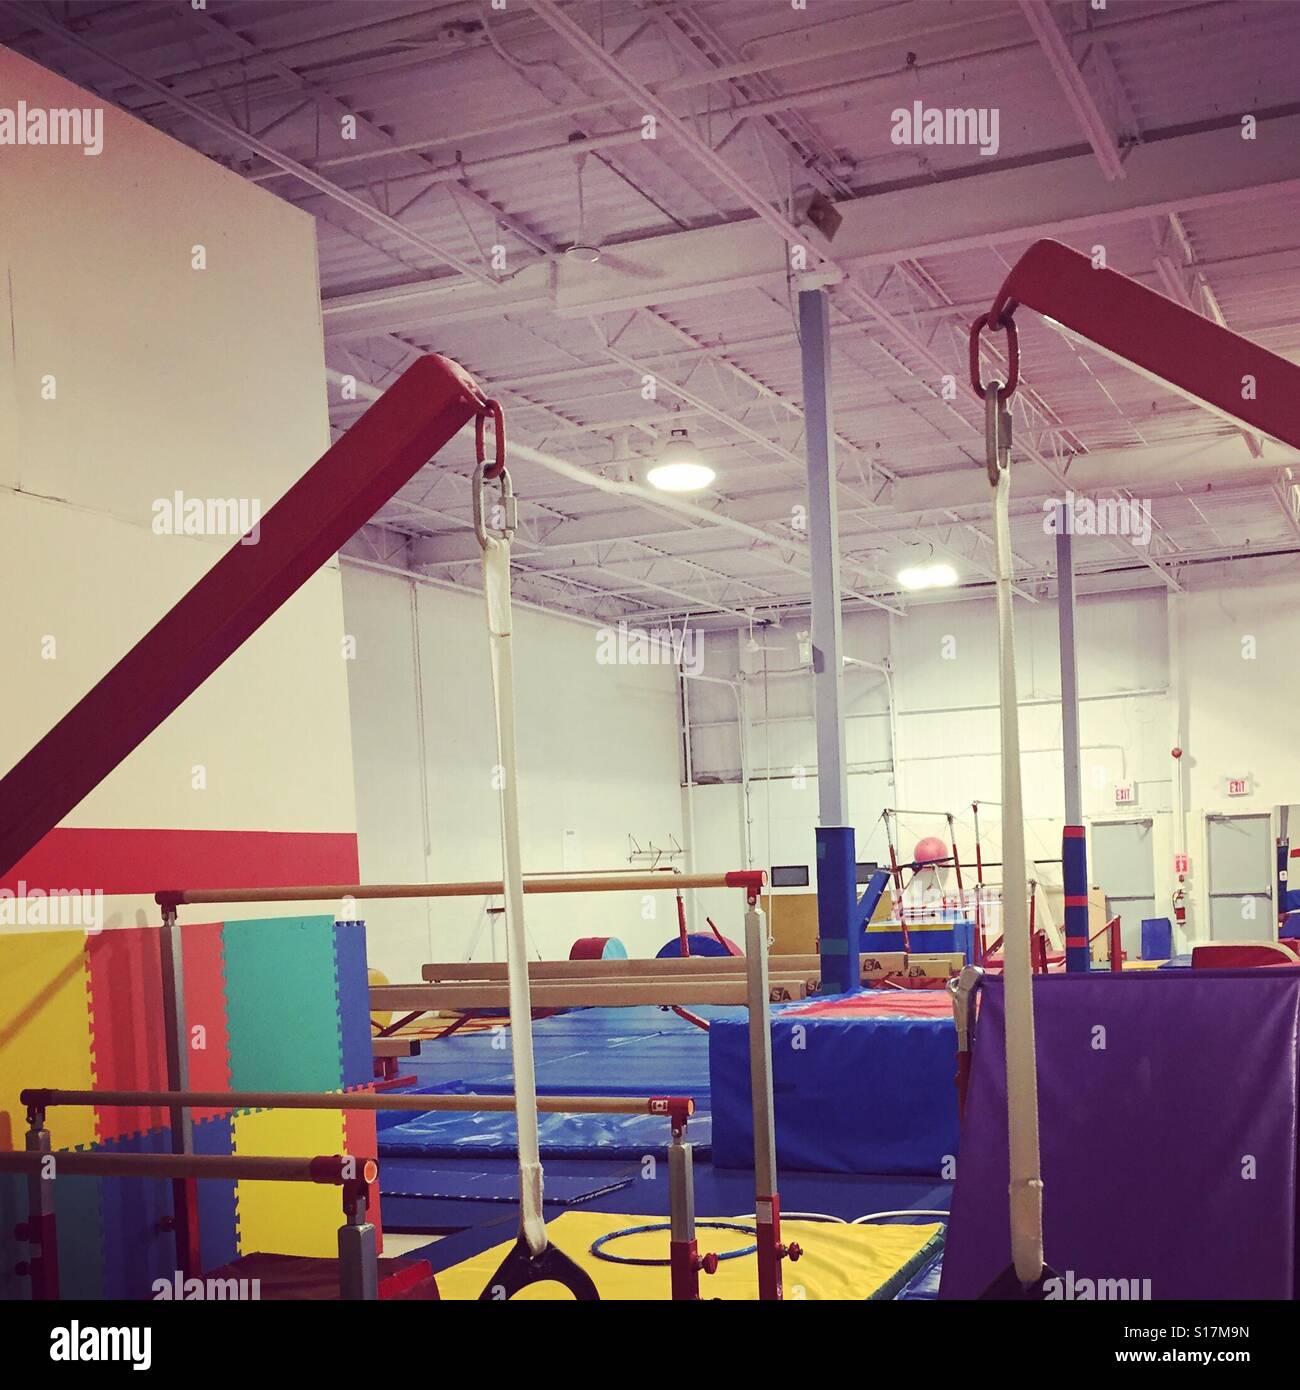 An empty gymnastics gymnasium by K.R. Stock Photo